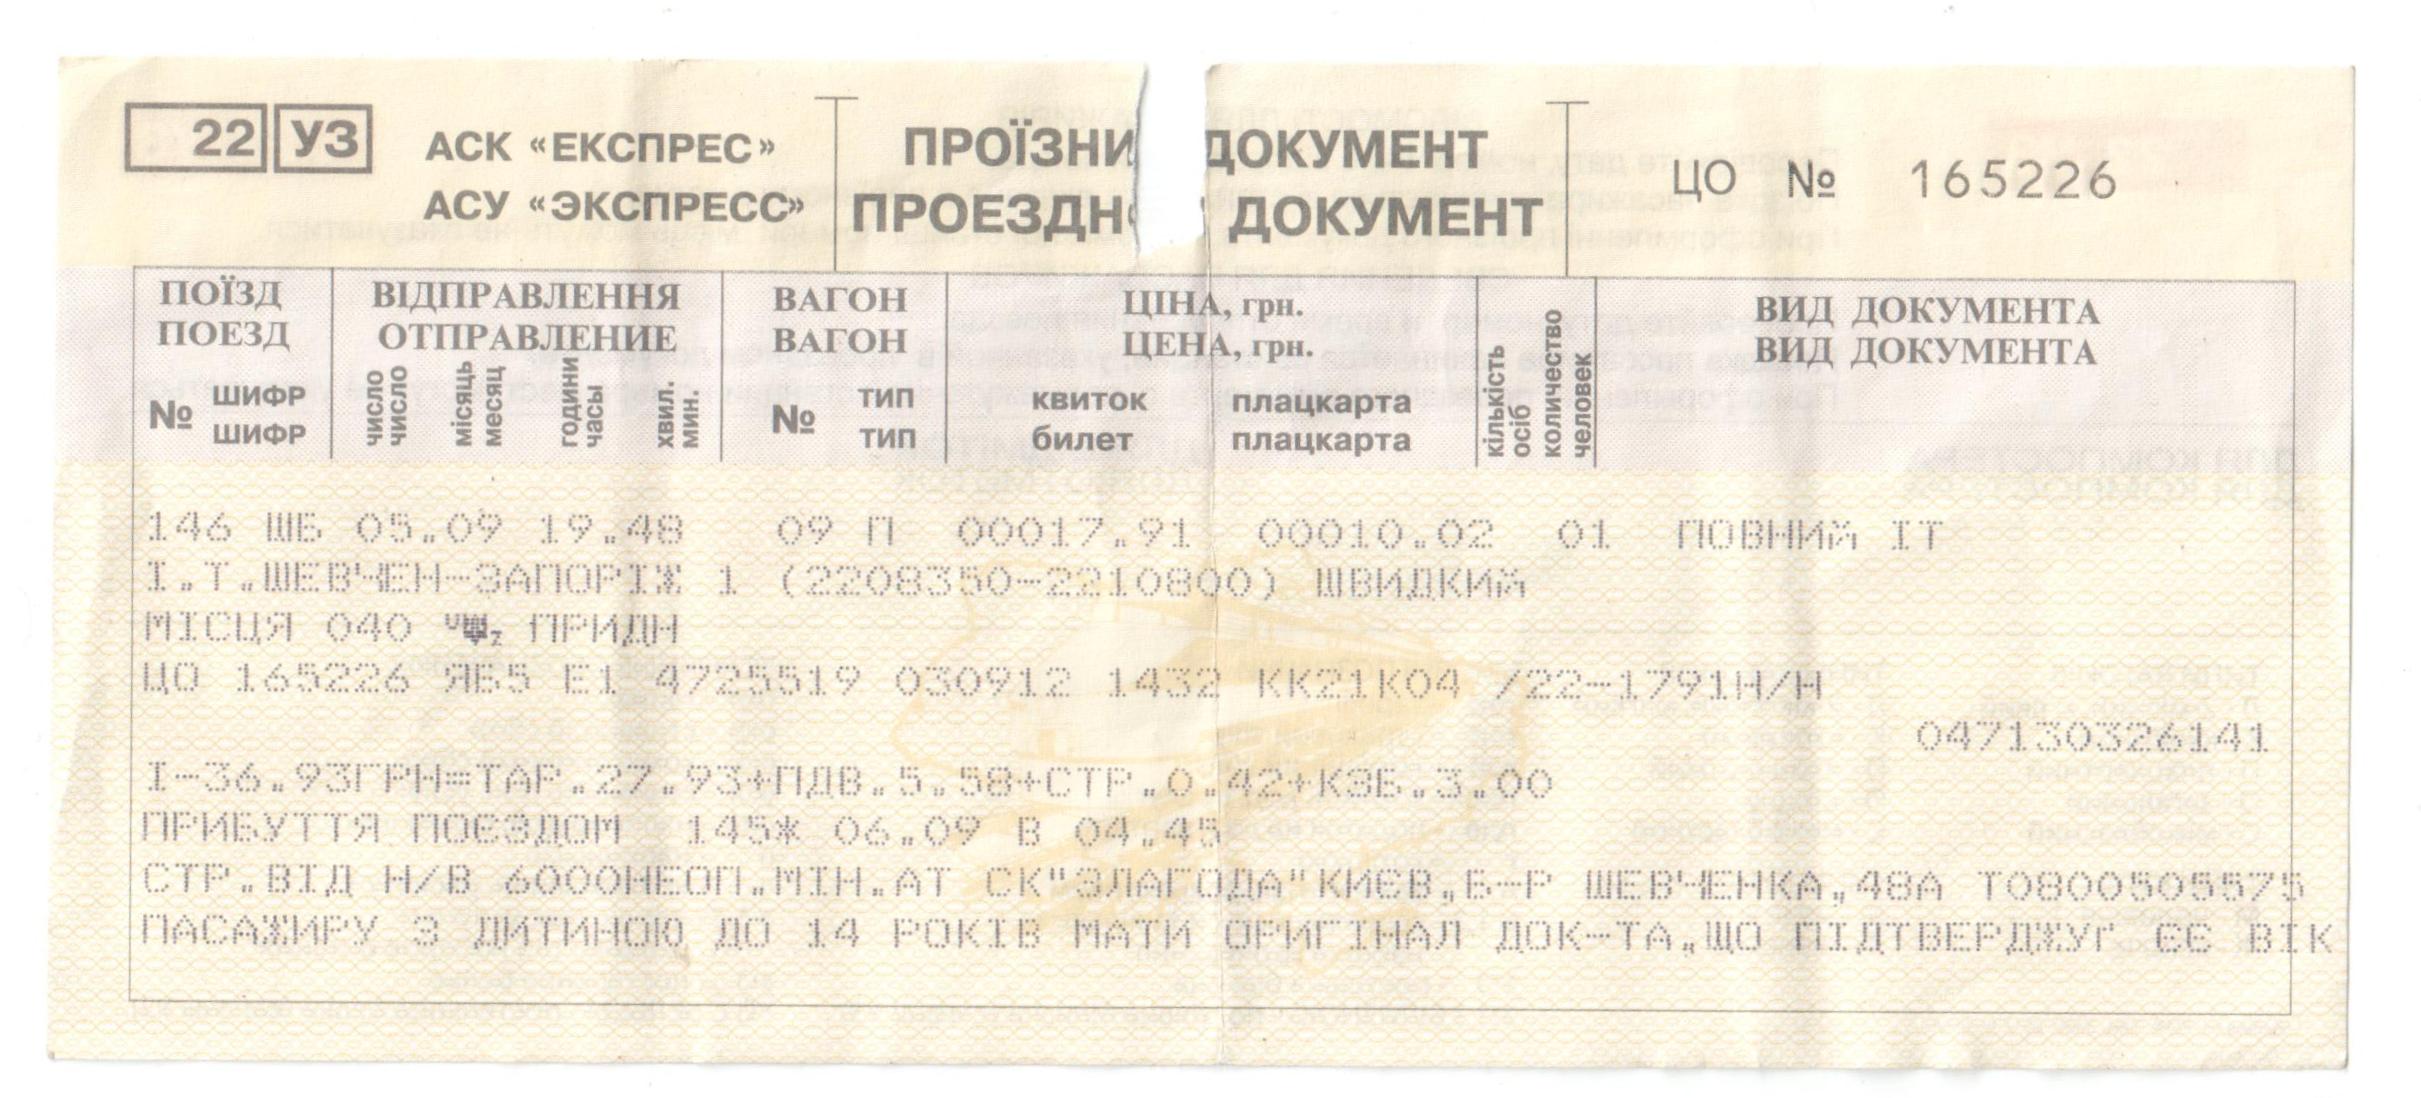 Купейный билет на поезд